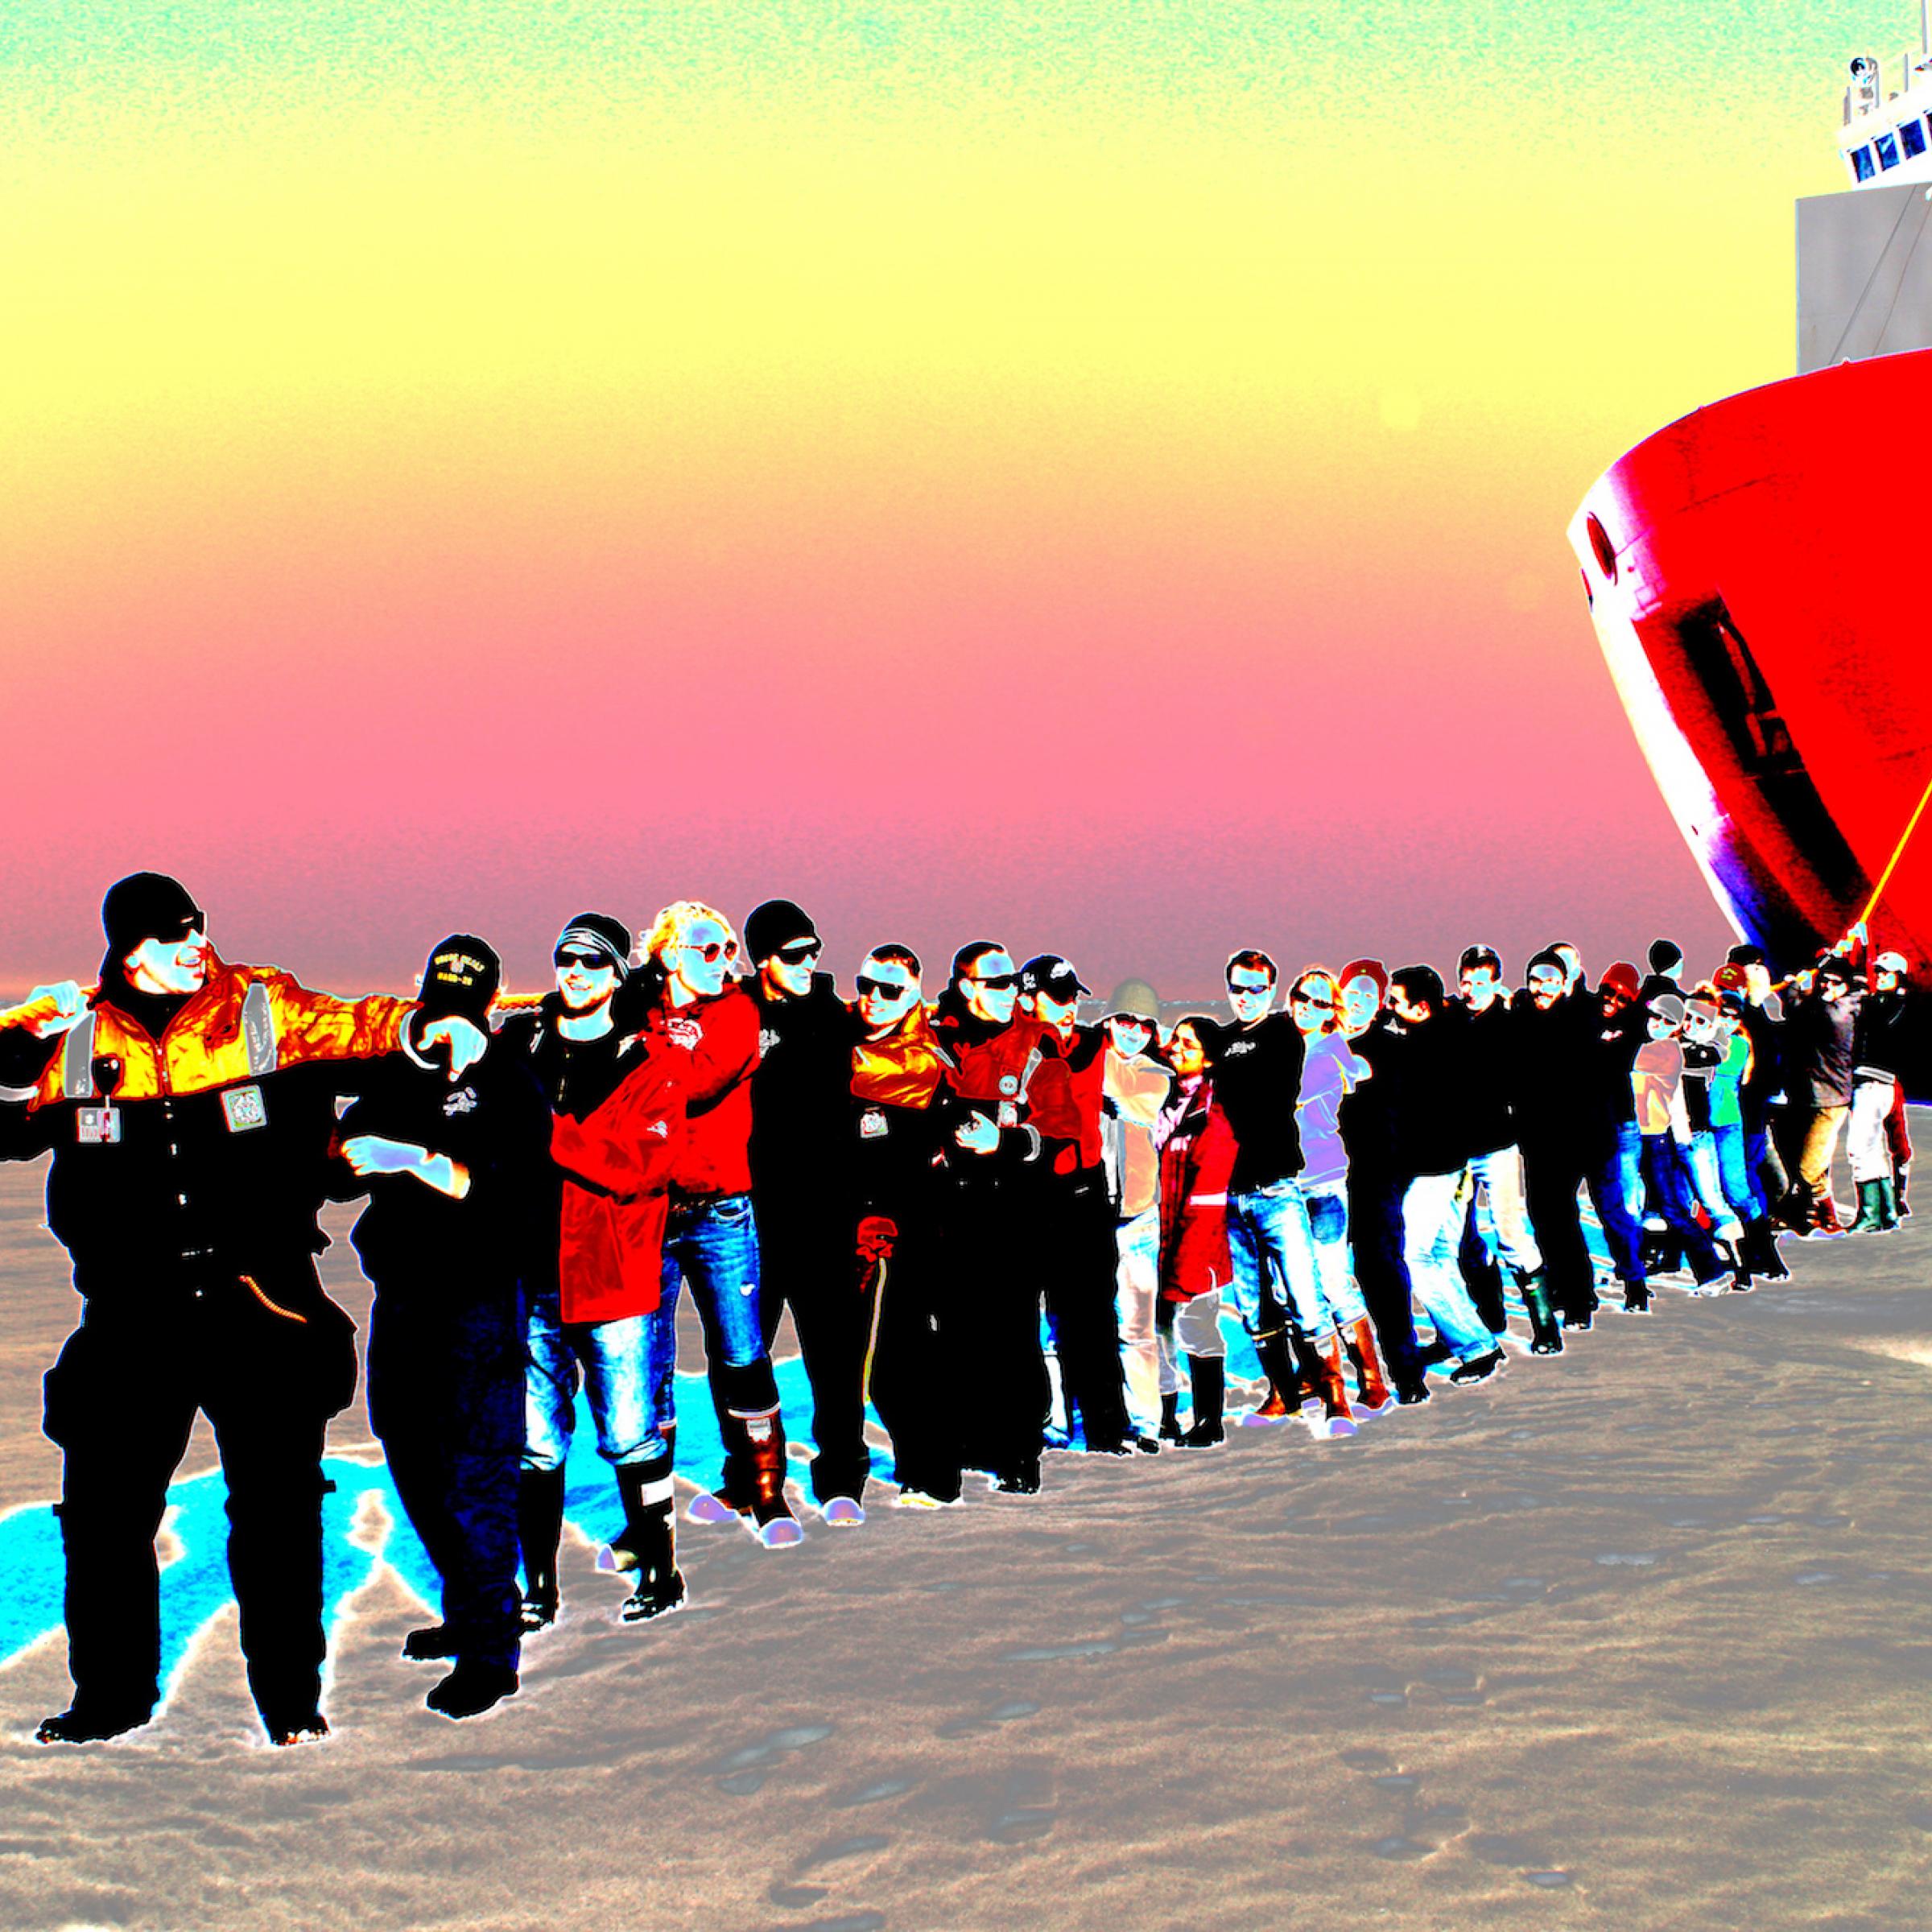 Eine Reihe von Menschen, angeführt von der Kapitänin, steht auf dem Eis und zieht an einer Trosse, die zum Bug eines Eisbrechers mit rotem Rumpf führt. Bei der Icescape-Mission der Nasa posiert die Besatzung des US-Coast-Guard-Schiffs „Healy“ 2011.